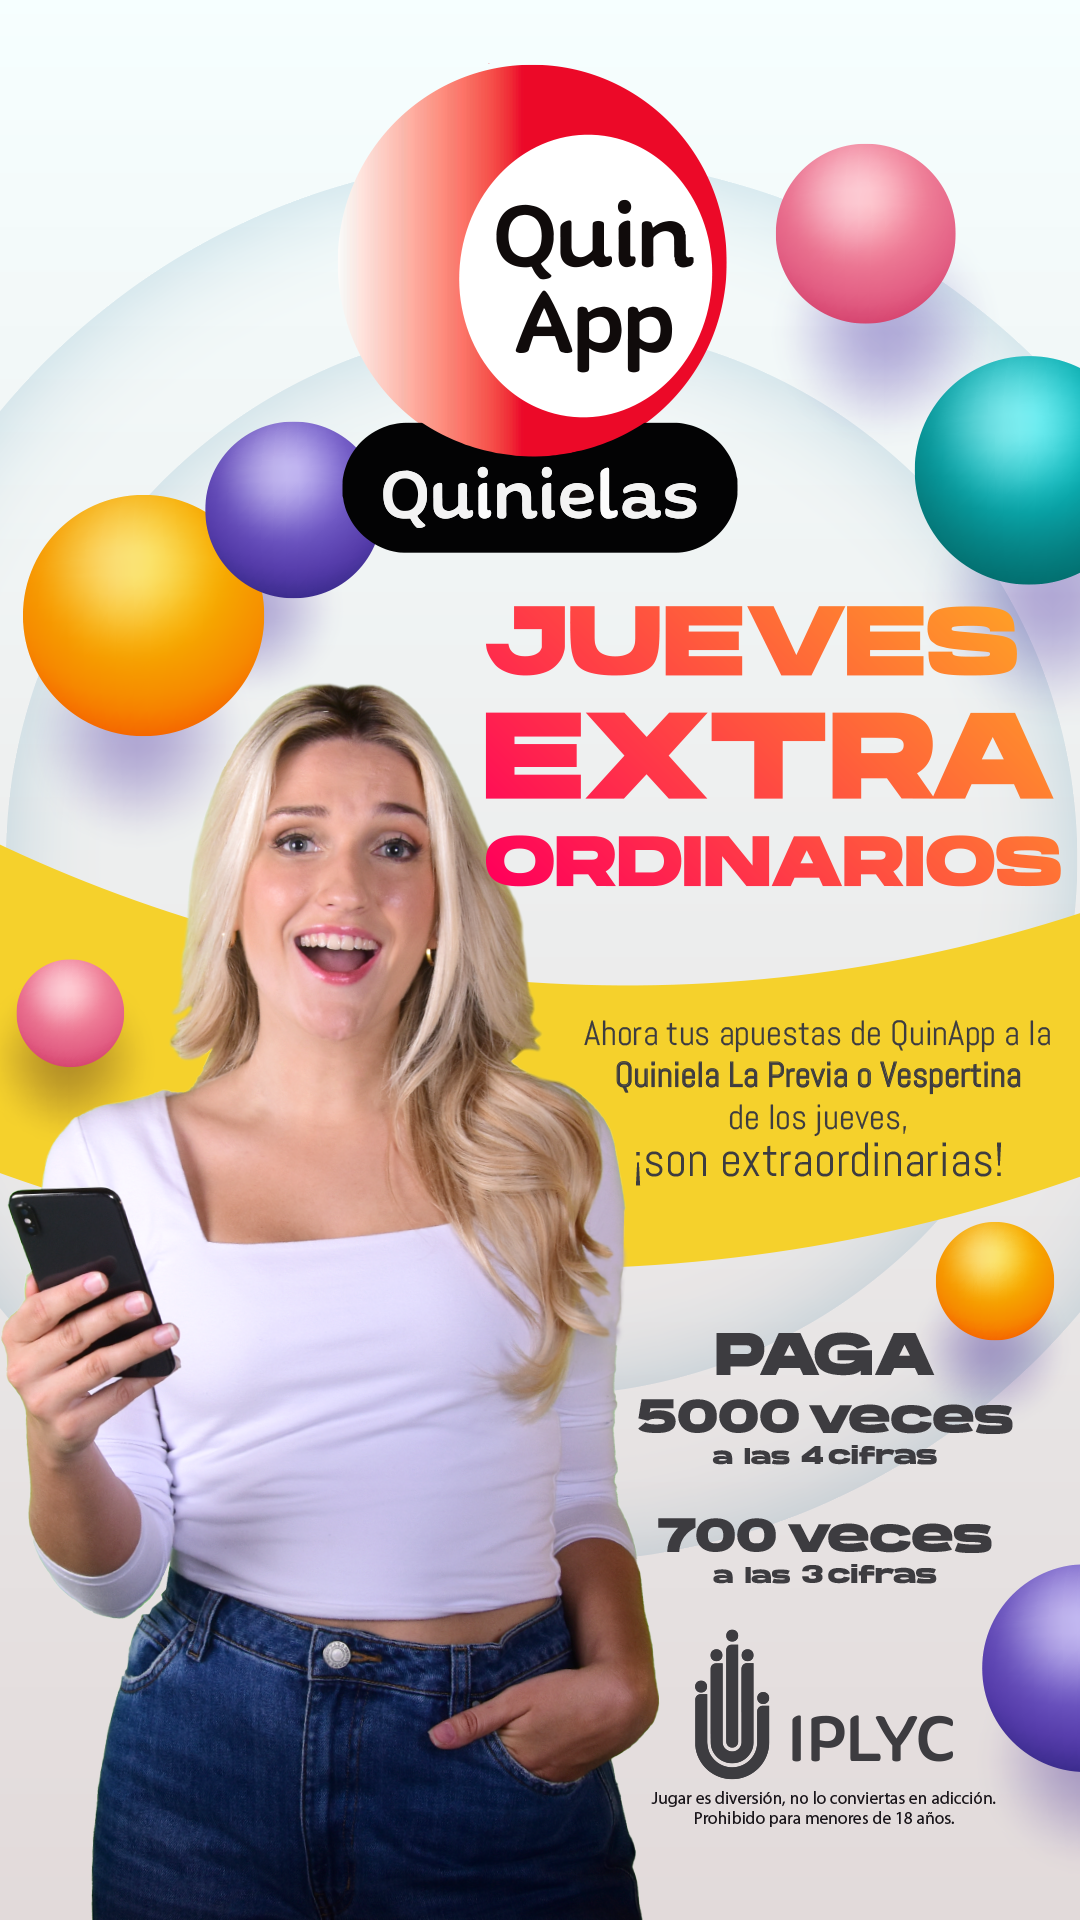 QuinApp, la nueva forma de jugar a la Quiniela